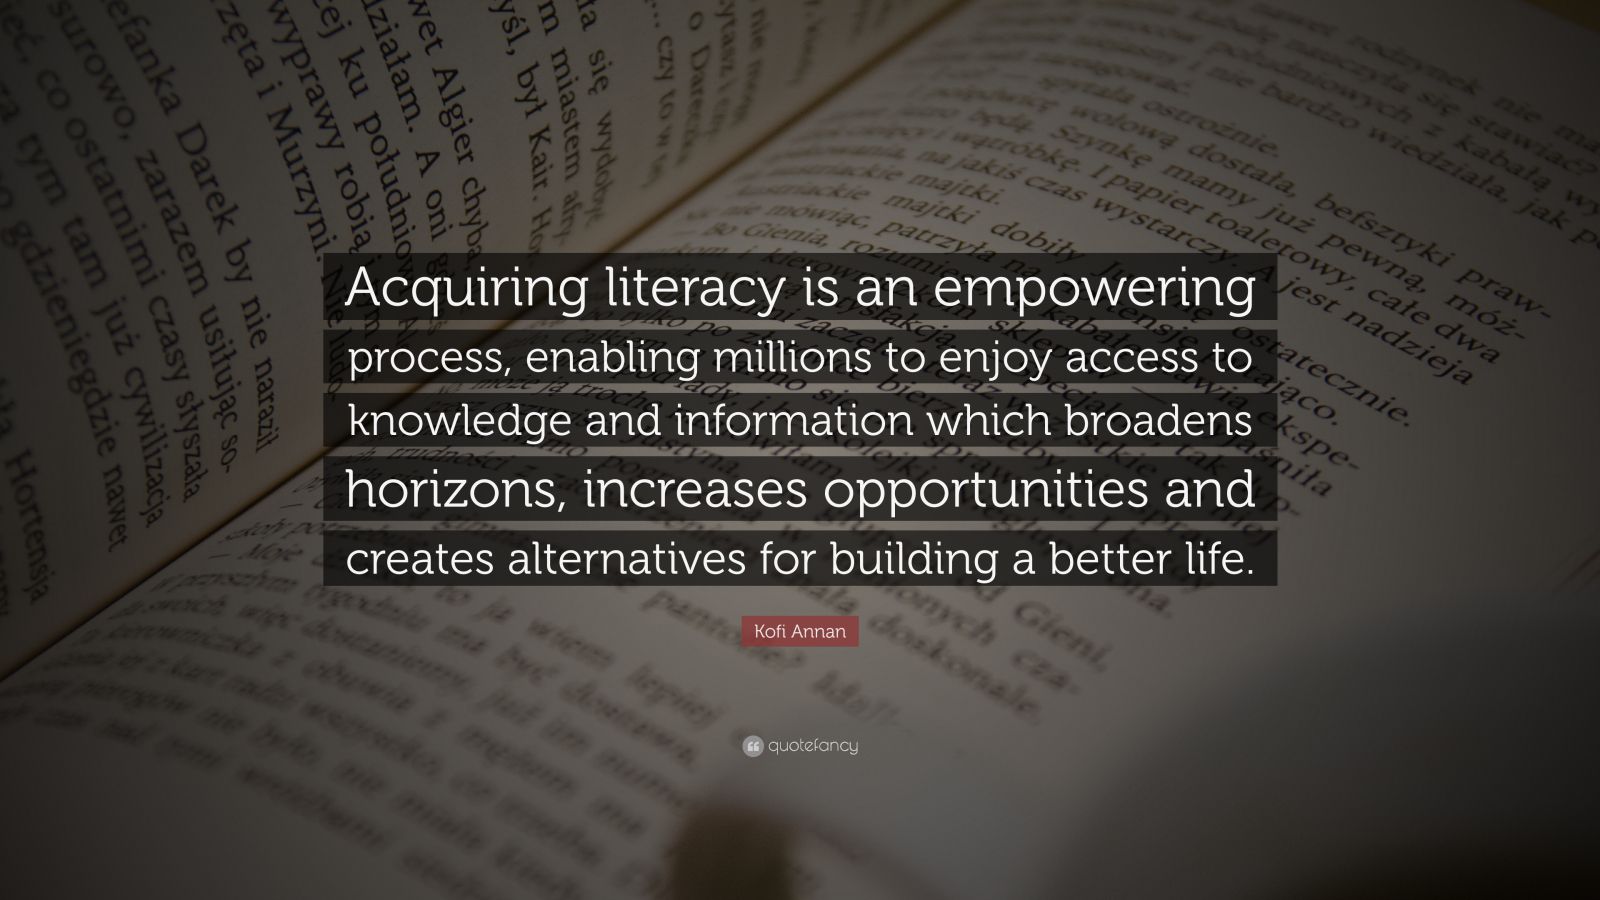 Kofi Annan Quote “Acquiring literacy is an empowering